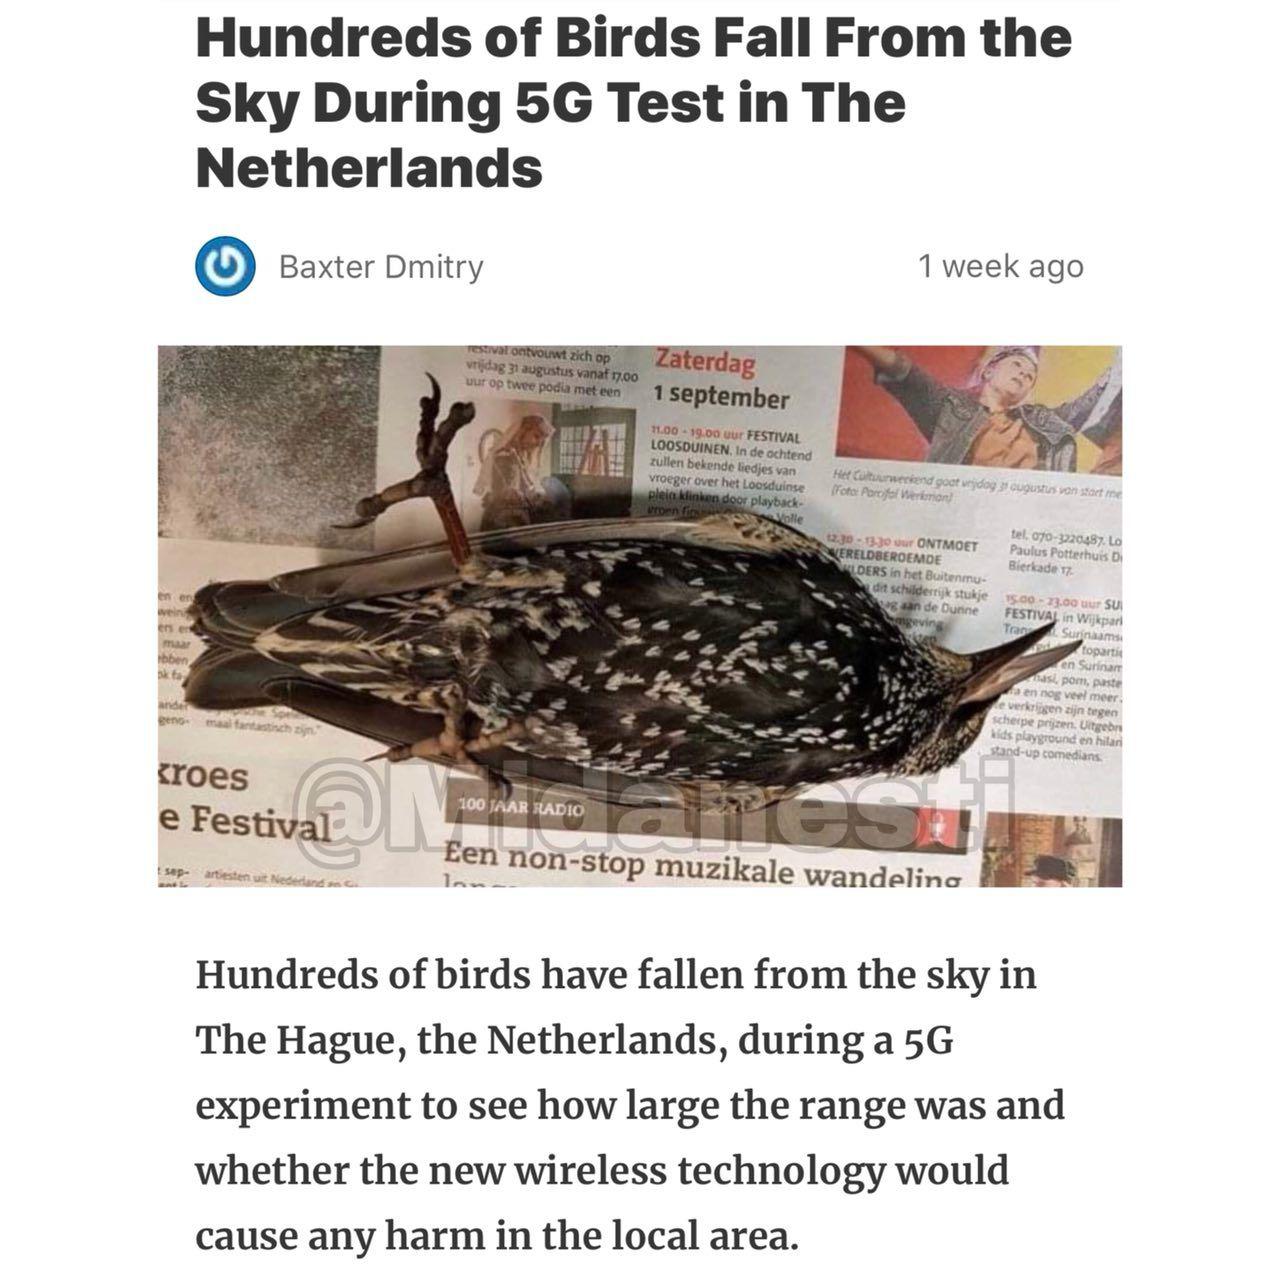 آزمایش اینترنت پرسرعت ۵G در هلند ۲۹۷ پرنده را کشت❗️